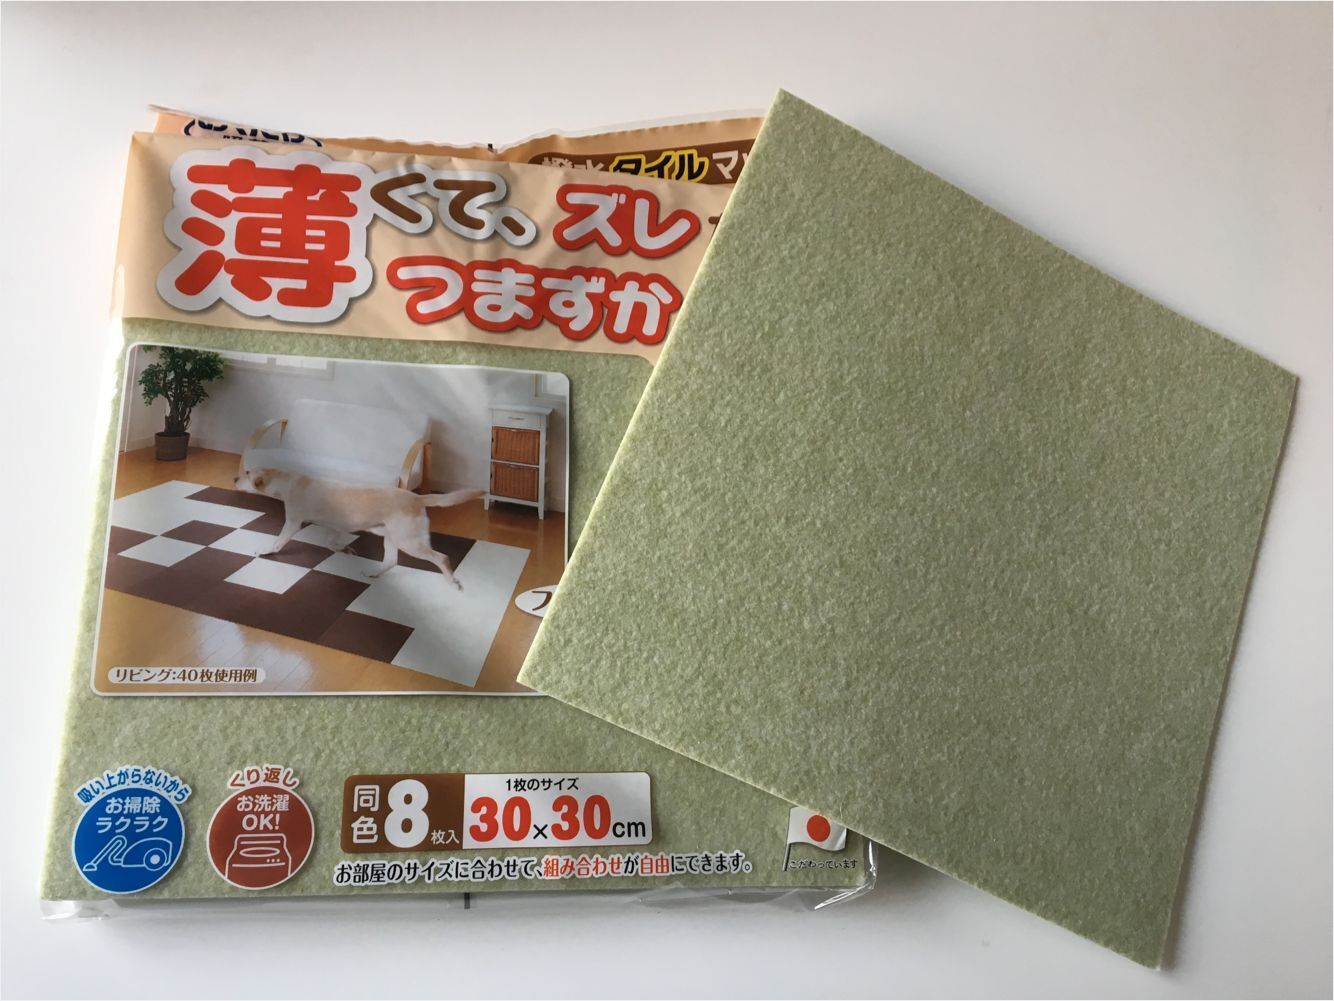 SANKO-GP日本方块拼接垫同色8枚入(浅绿色)